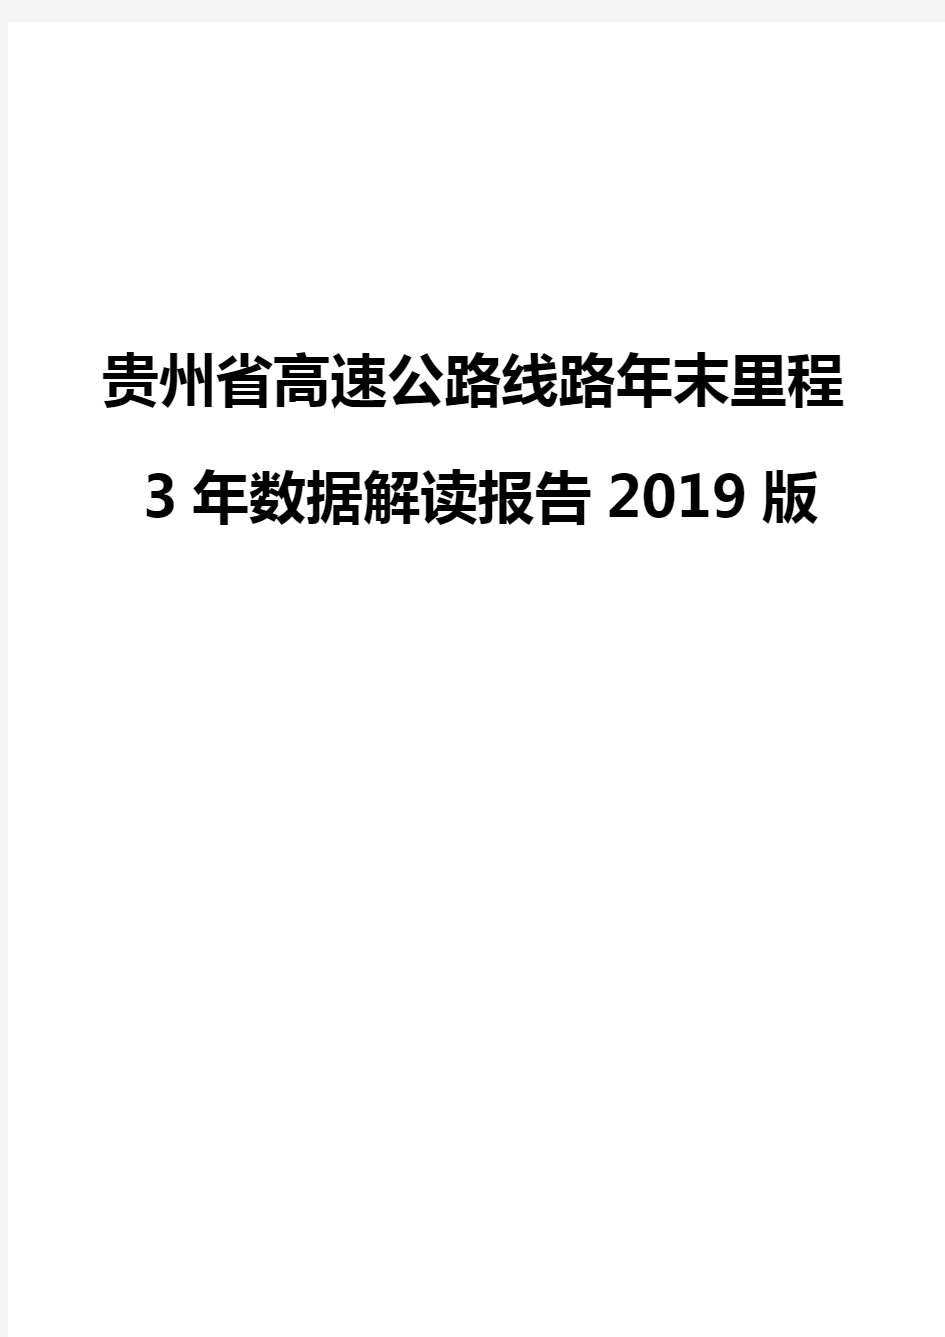 贵州省高速公路线路年末里程3年数据解读报告2019版